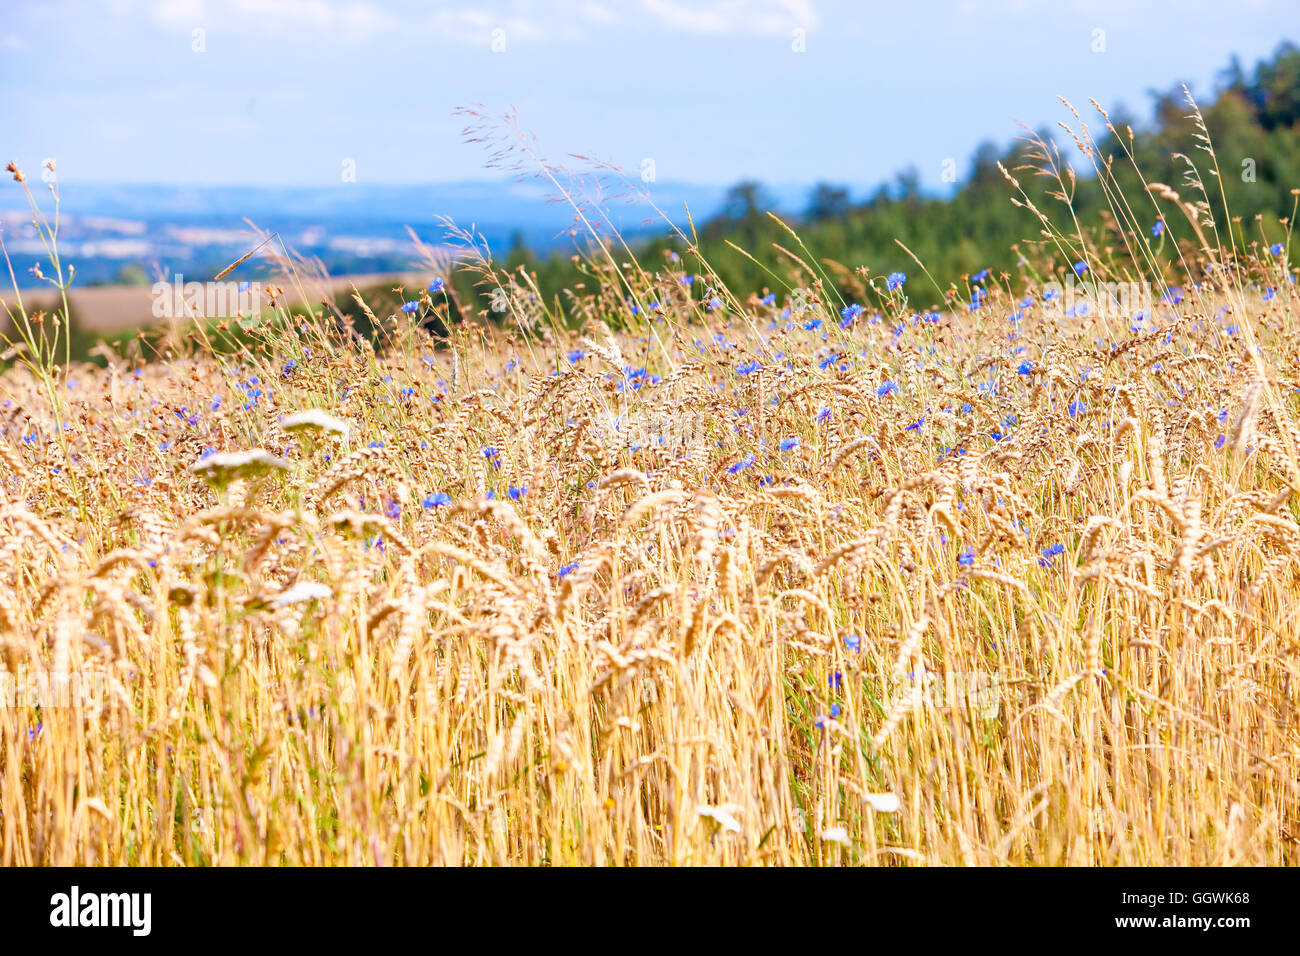 Васильки в пшеничном поле или ржаном